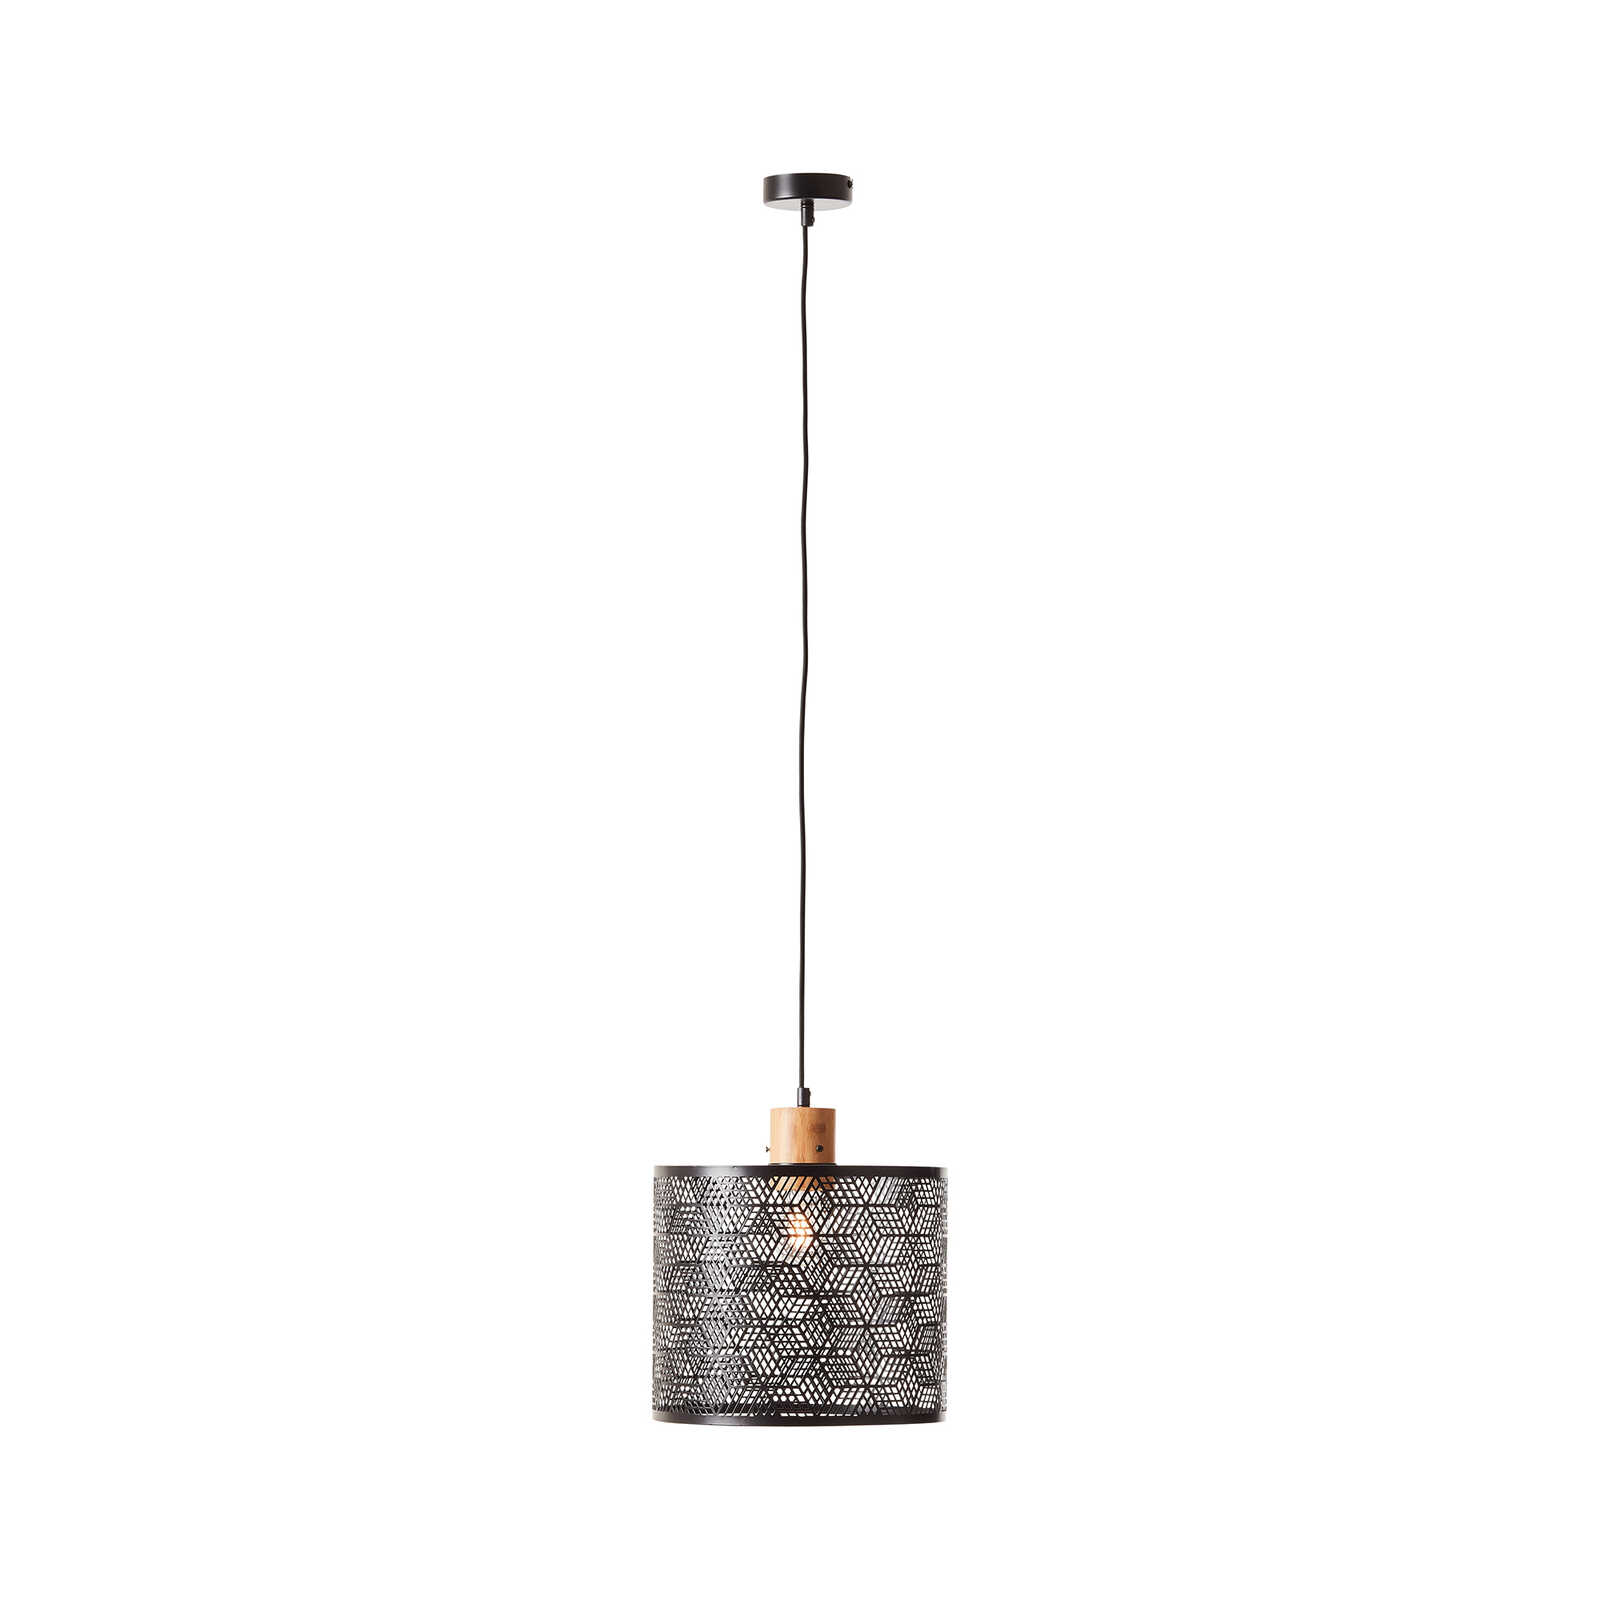 Metalen hanglamp - Moritz 1 - Bruin
